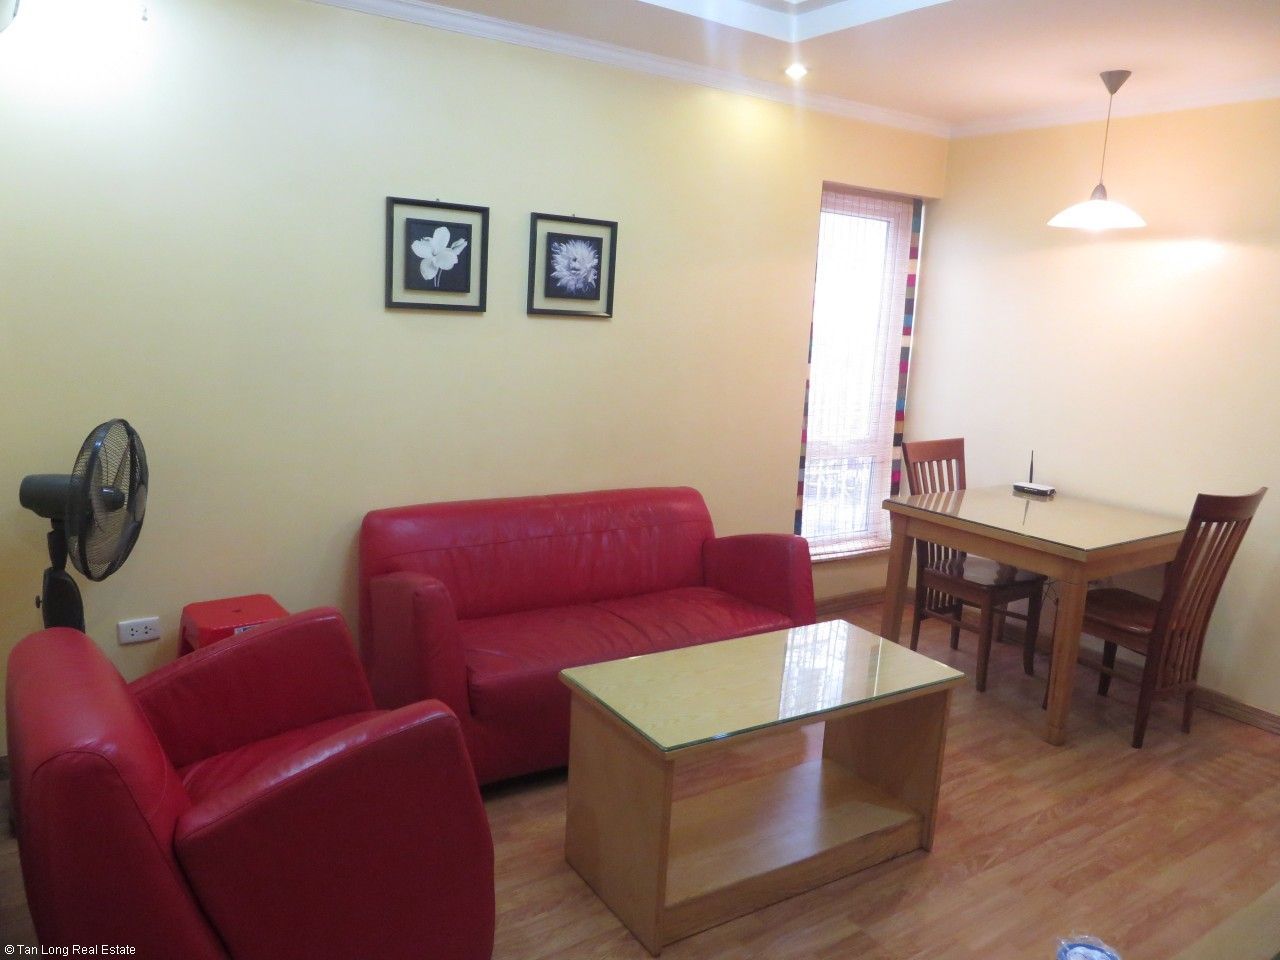 Cho thuê căn hộ dịch vụ 60m2 tại Nguyễn Thái Học, quận Đống Đa